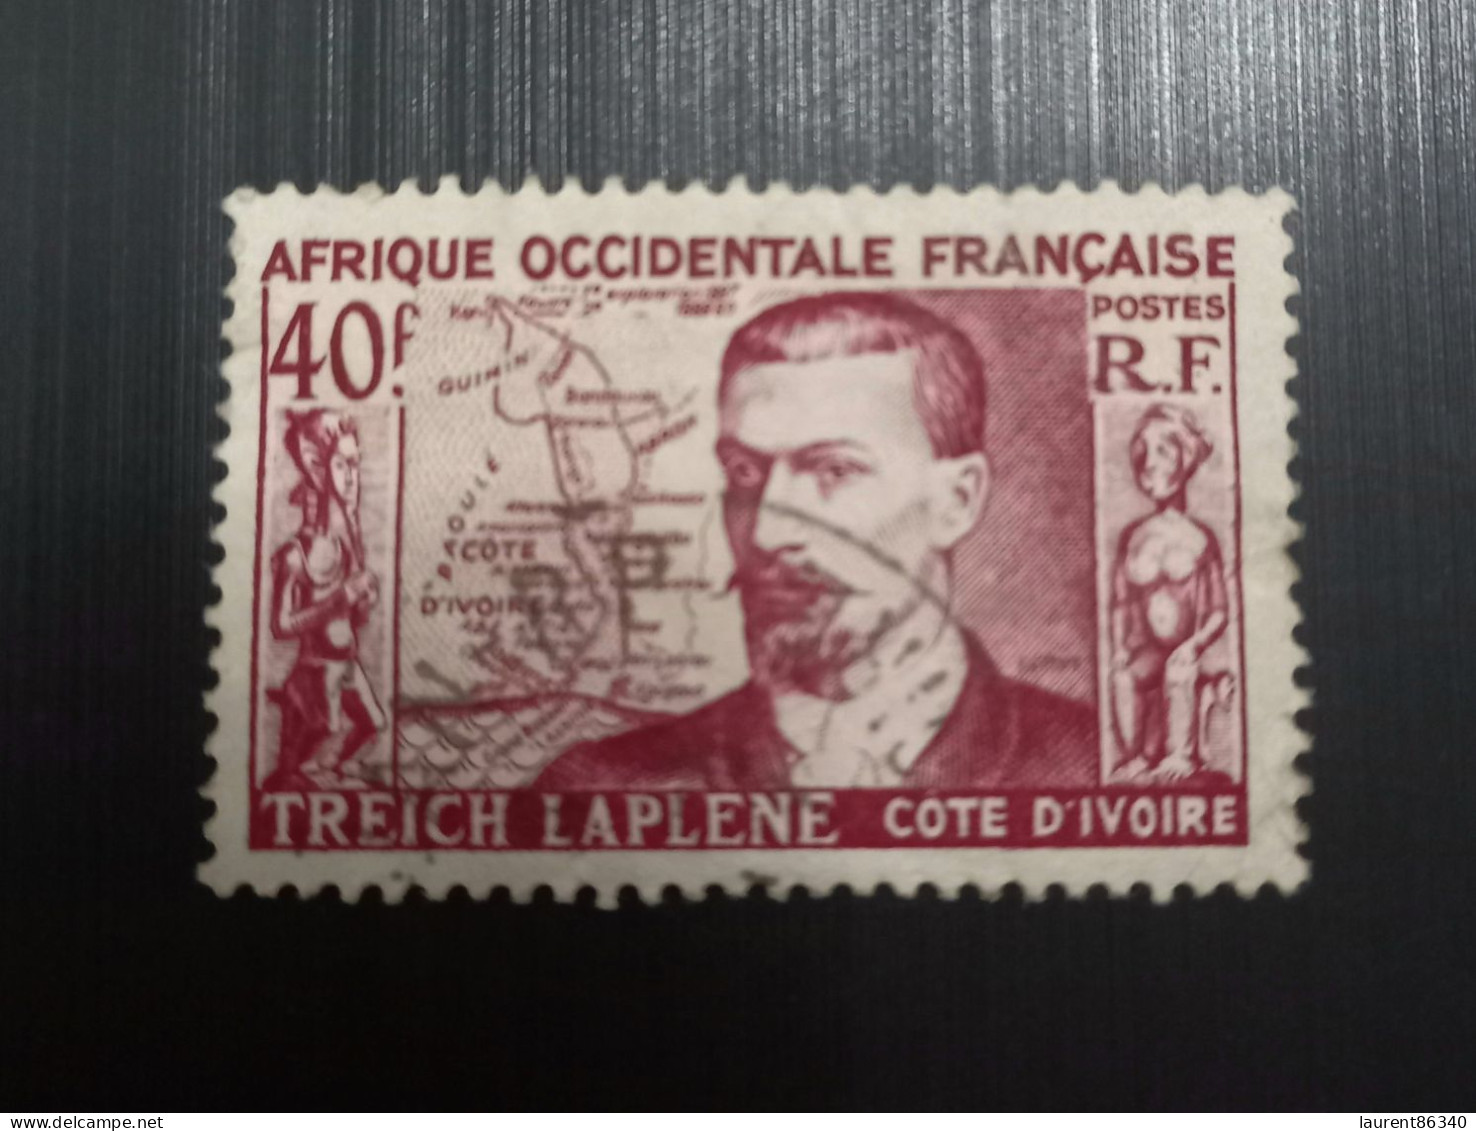 Afrique Occidentale Française 1952 Marcel Treich-Laplène (1860-1889), Fondateur De La Côte D'Ivoire - Gebraucht